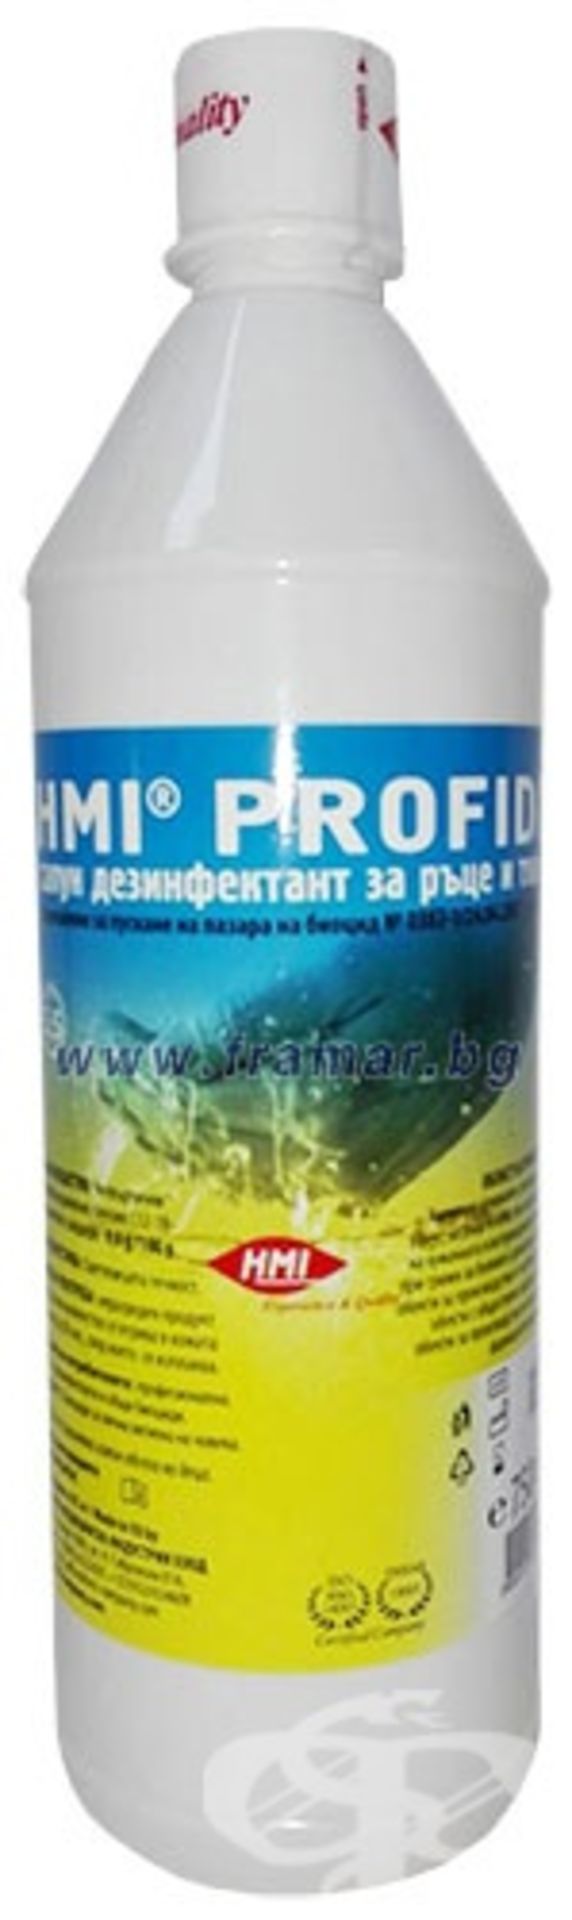 50 x Profidi Liquid Soap Disinfectant For Hands and Skin - Bild 5 aus 9